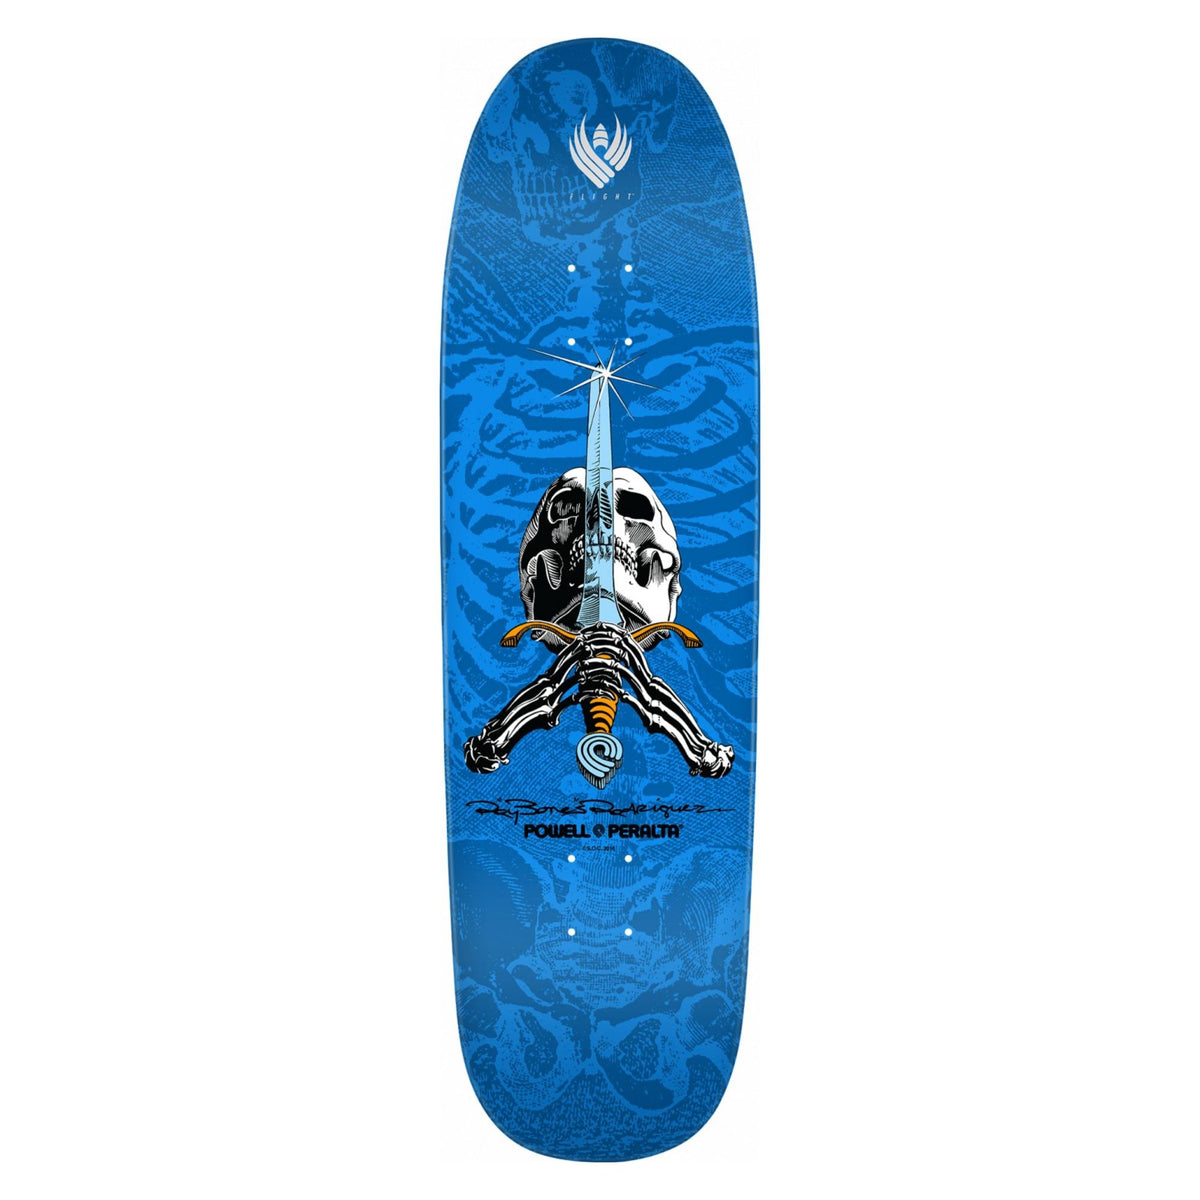 Powell-Peralta Flight Skateboard Deck, Sword & Skull, 9.265"